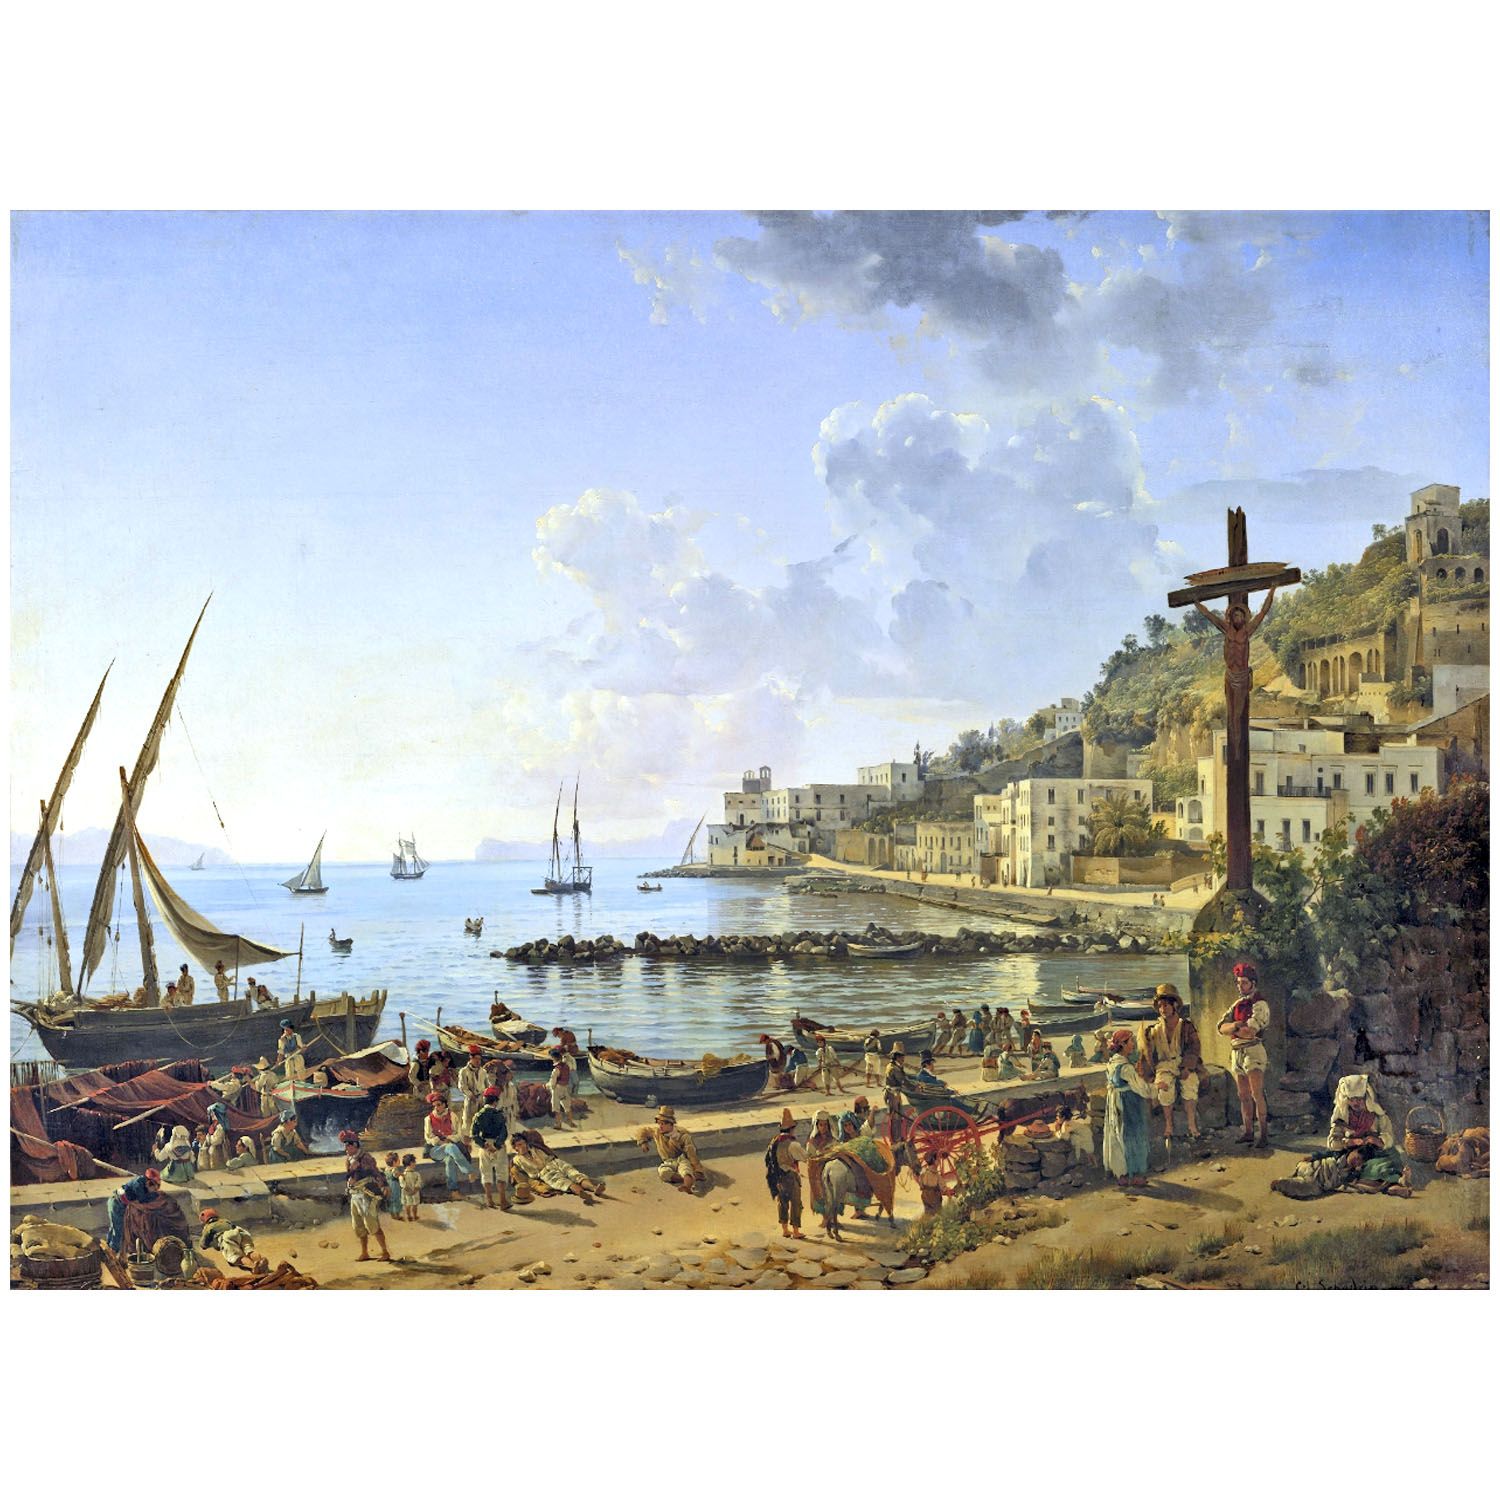 Сильвестр Щедрин. Мерджеллина, Неаполь. 1826. Русский музей